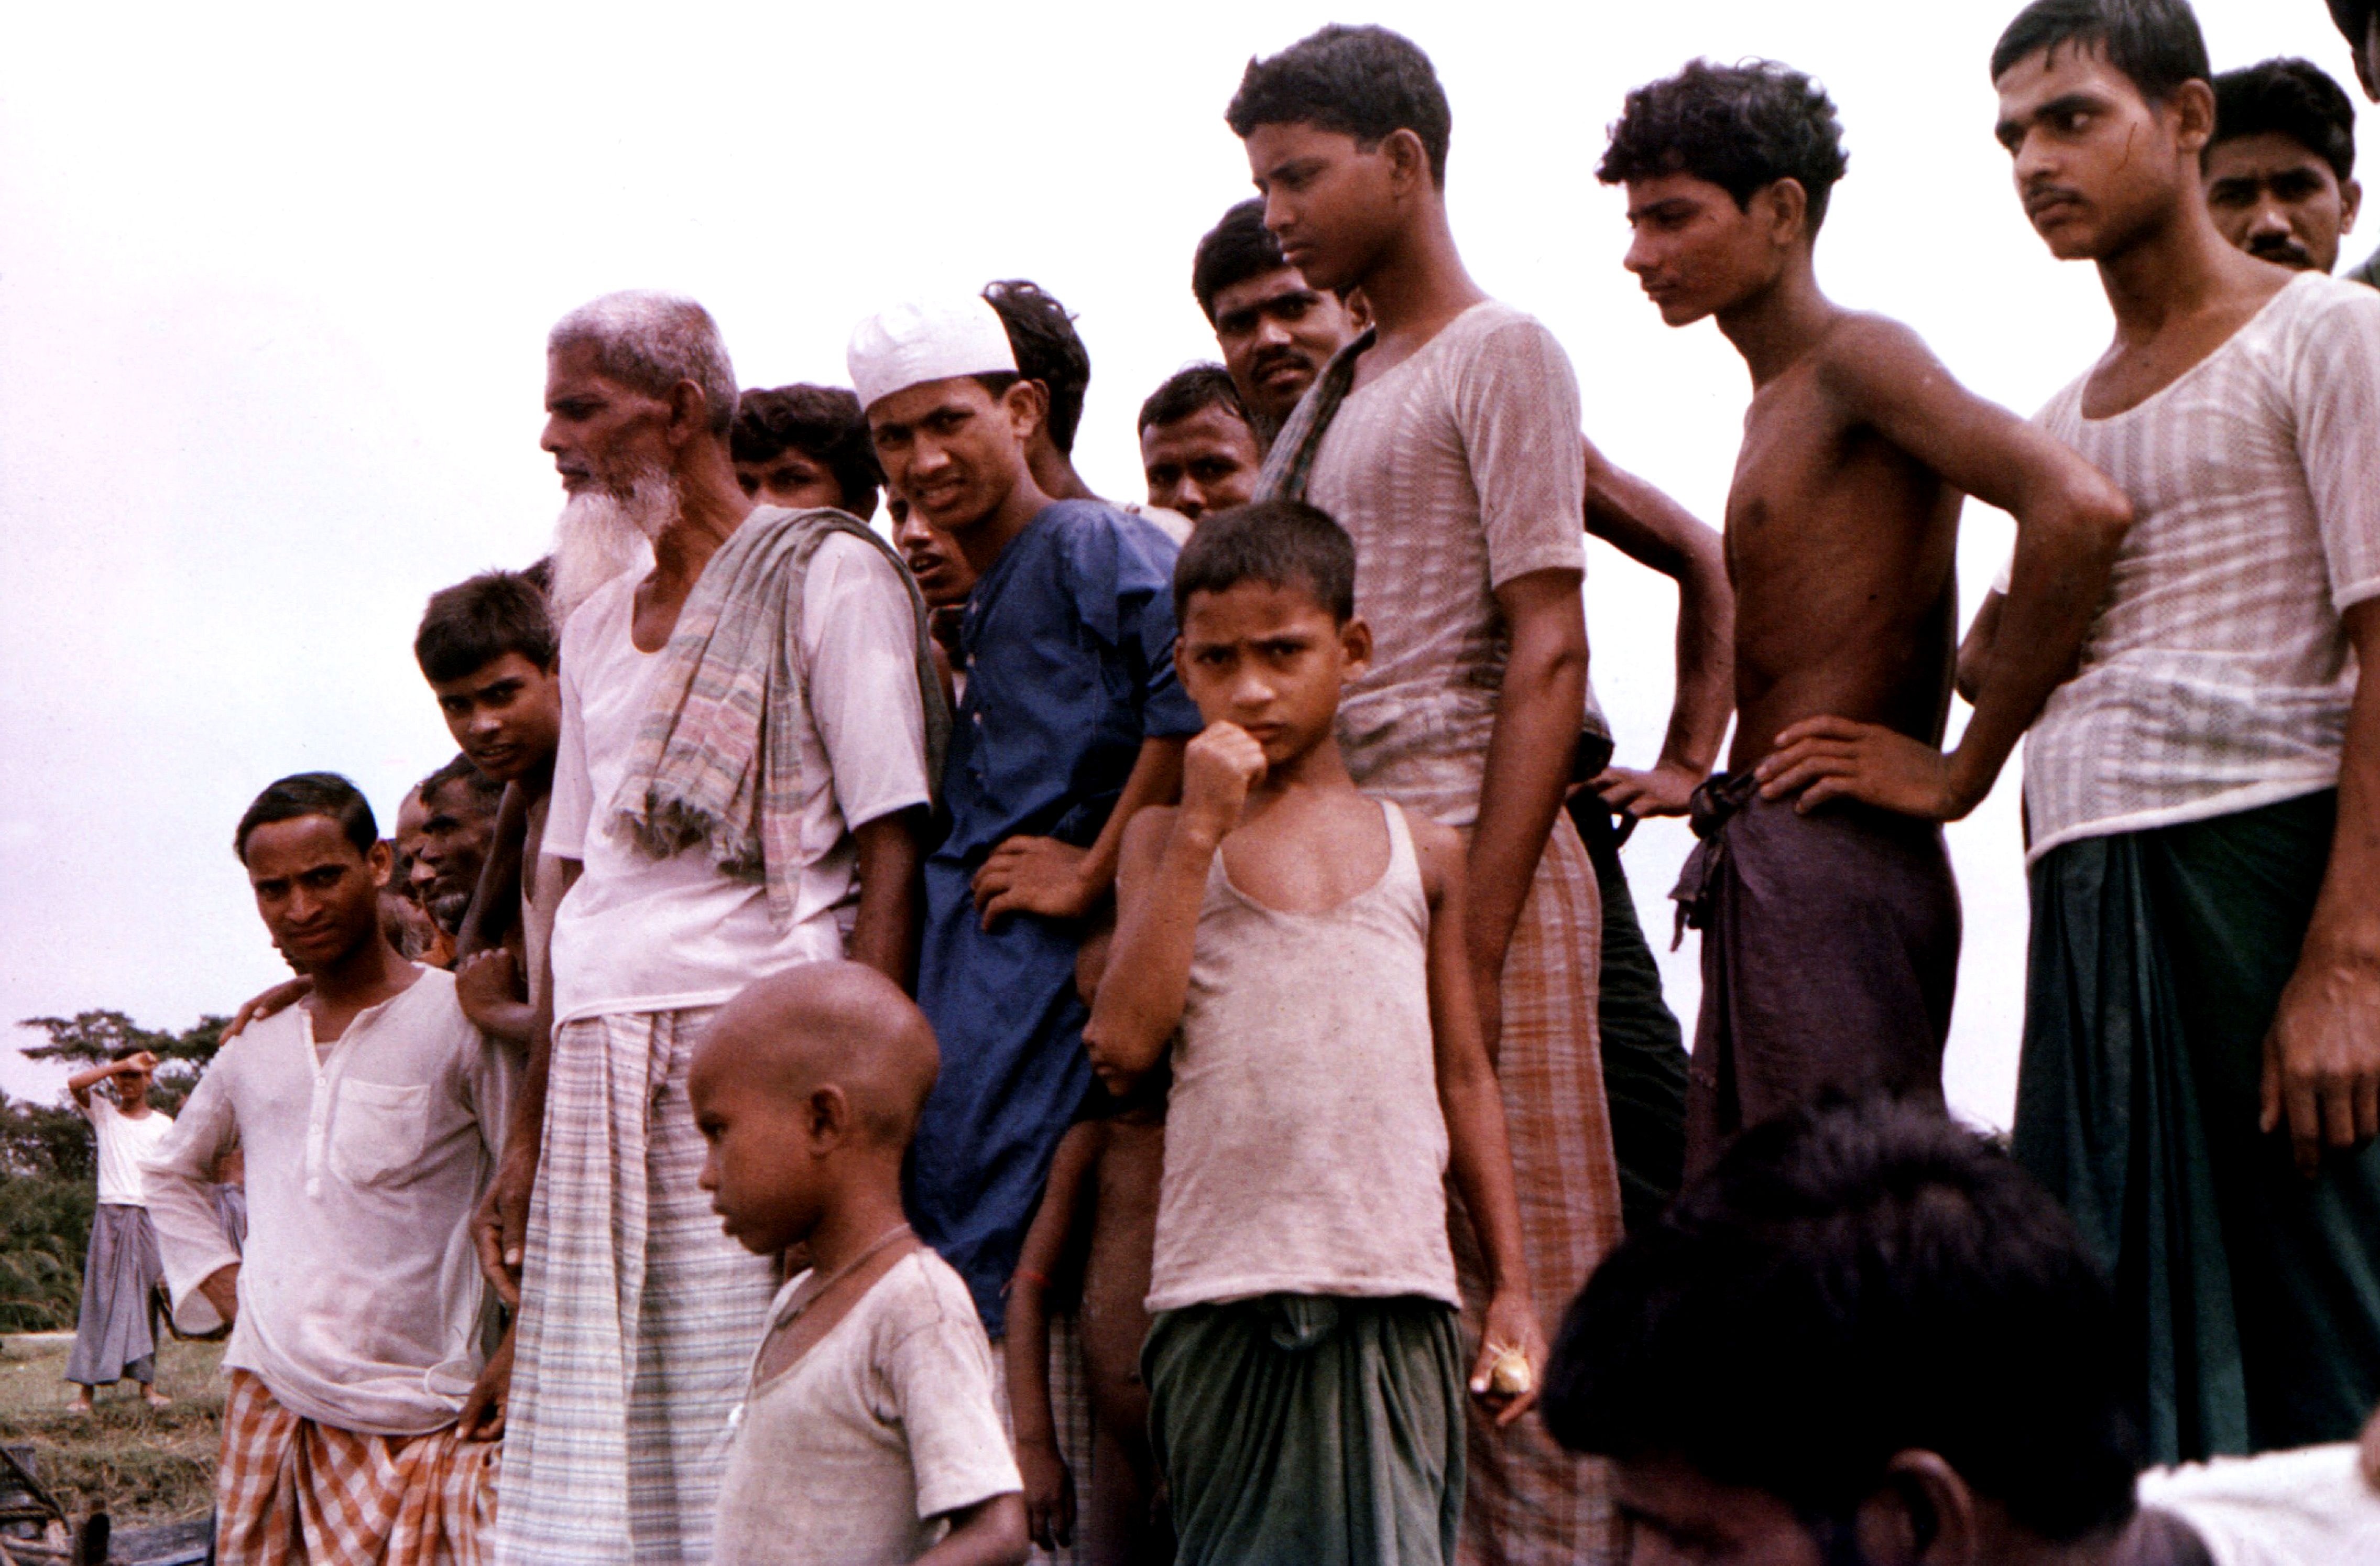 Бангладеш национальность людей. Бангладешский мальчик. Жители Бангладеш фото.